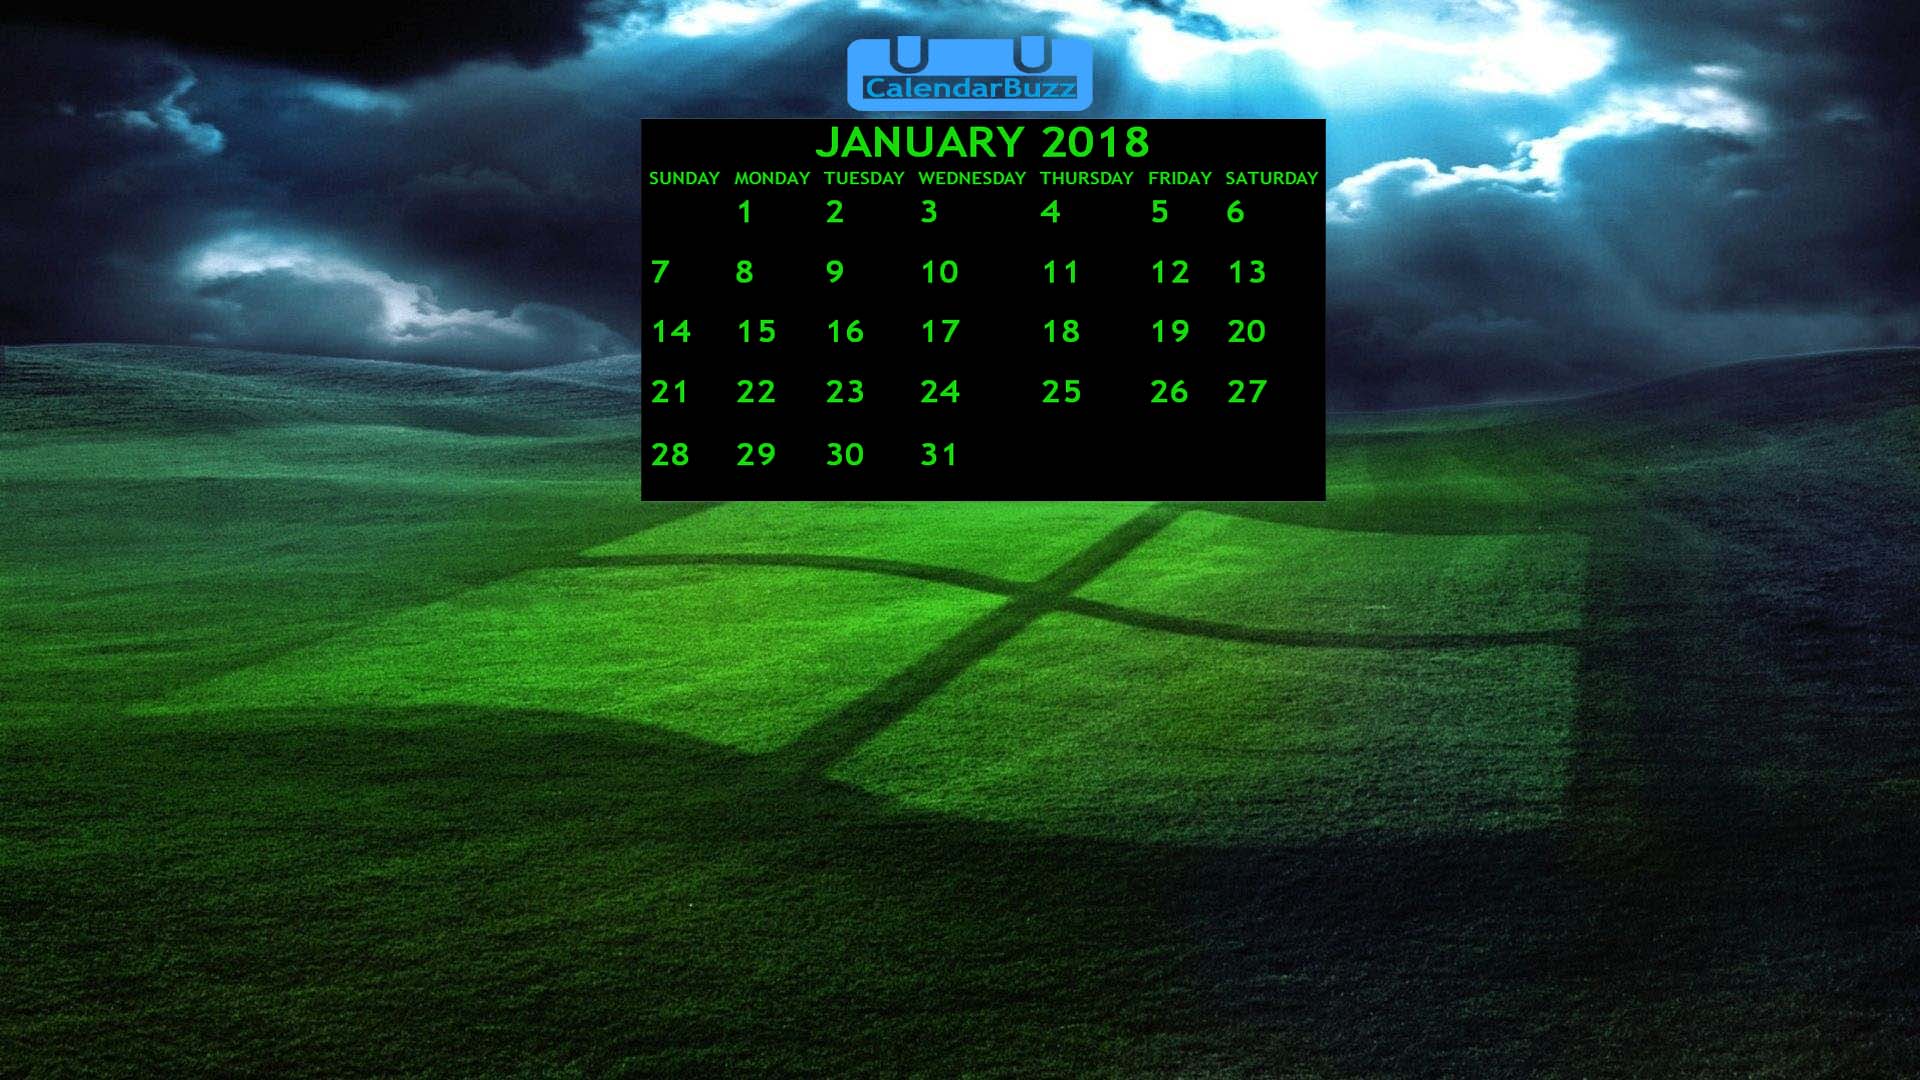 Free Download January 2018 Calendar Wallpaper CalendarBuzz 1920x1080 